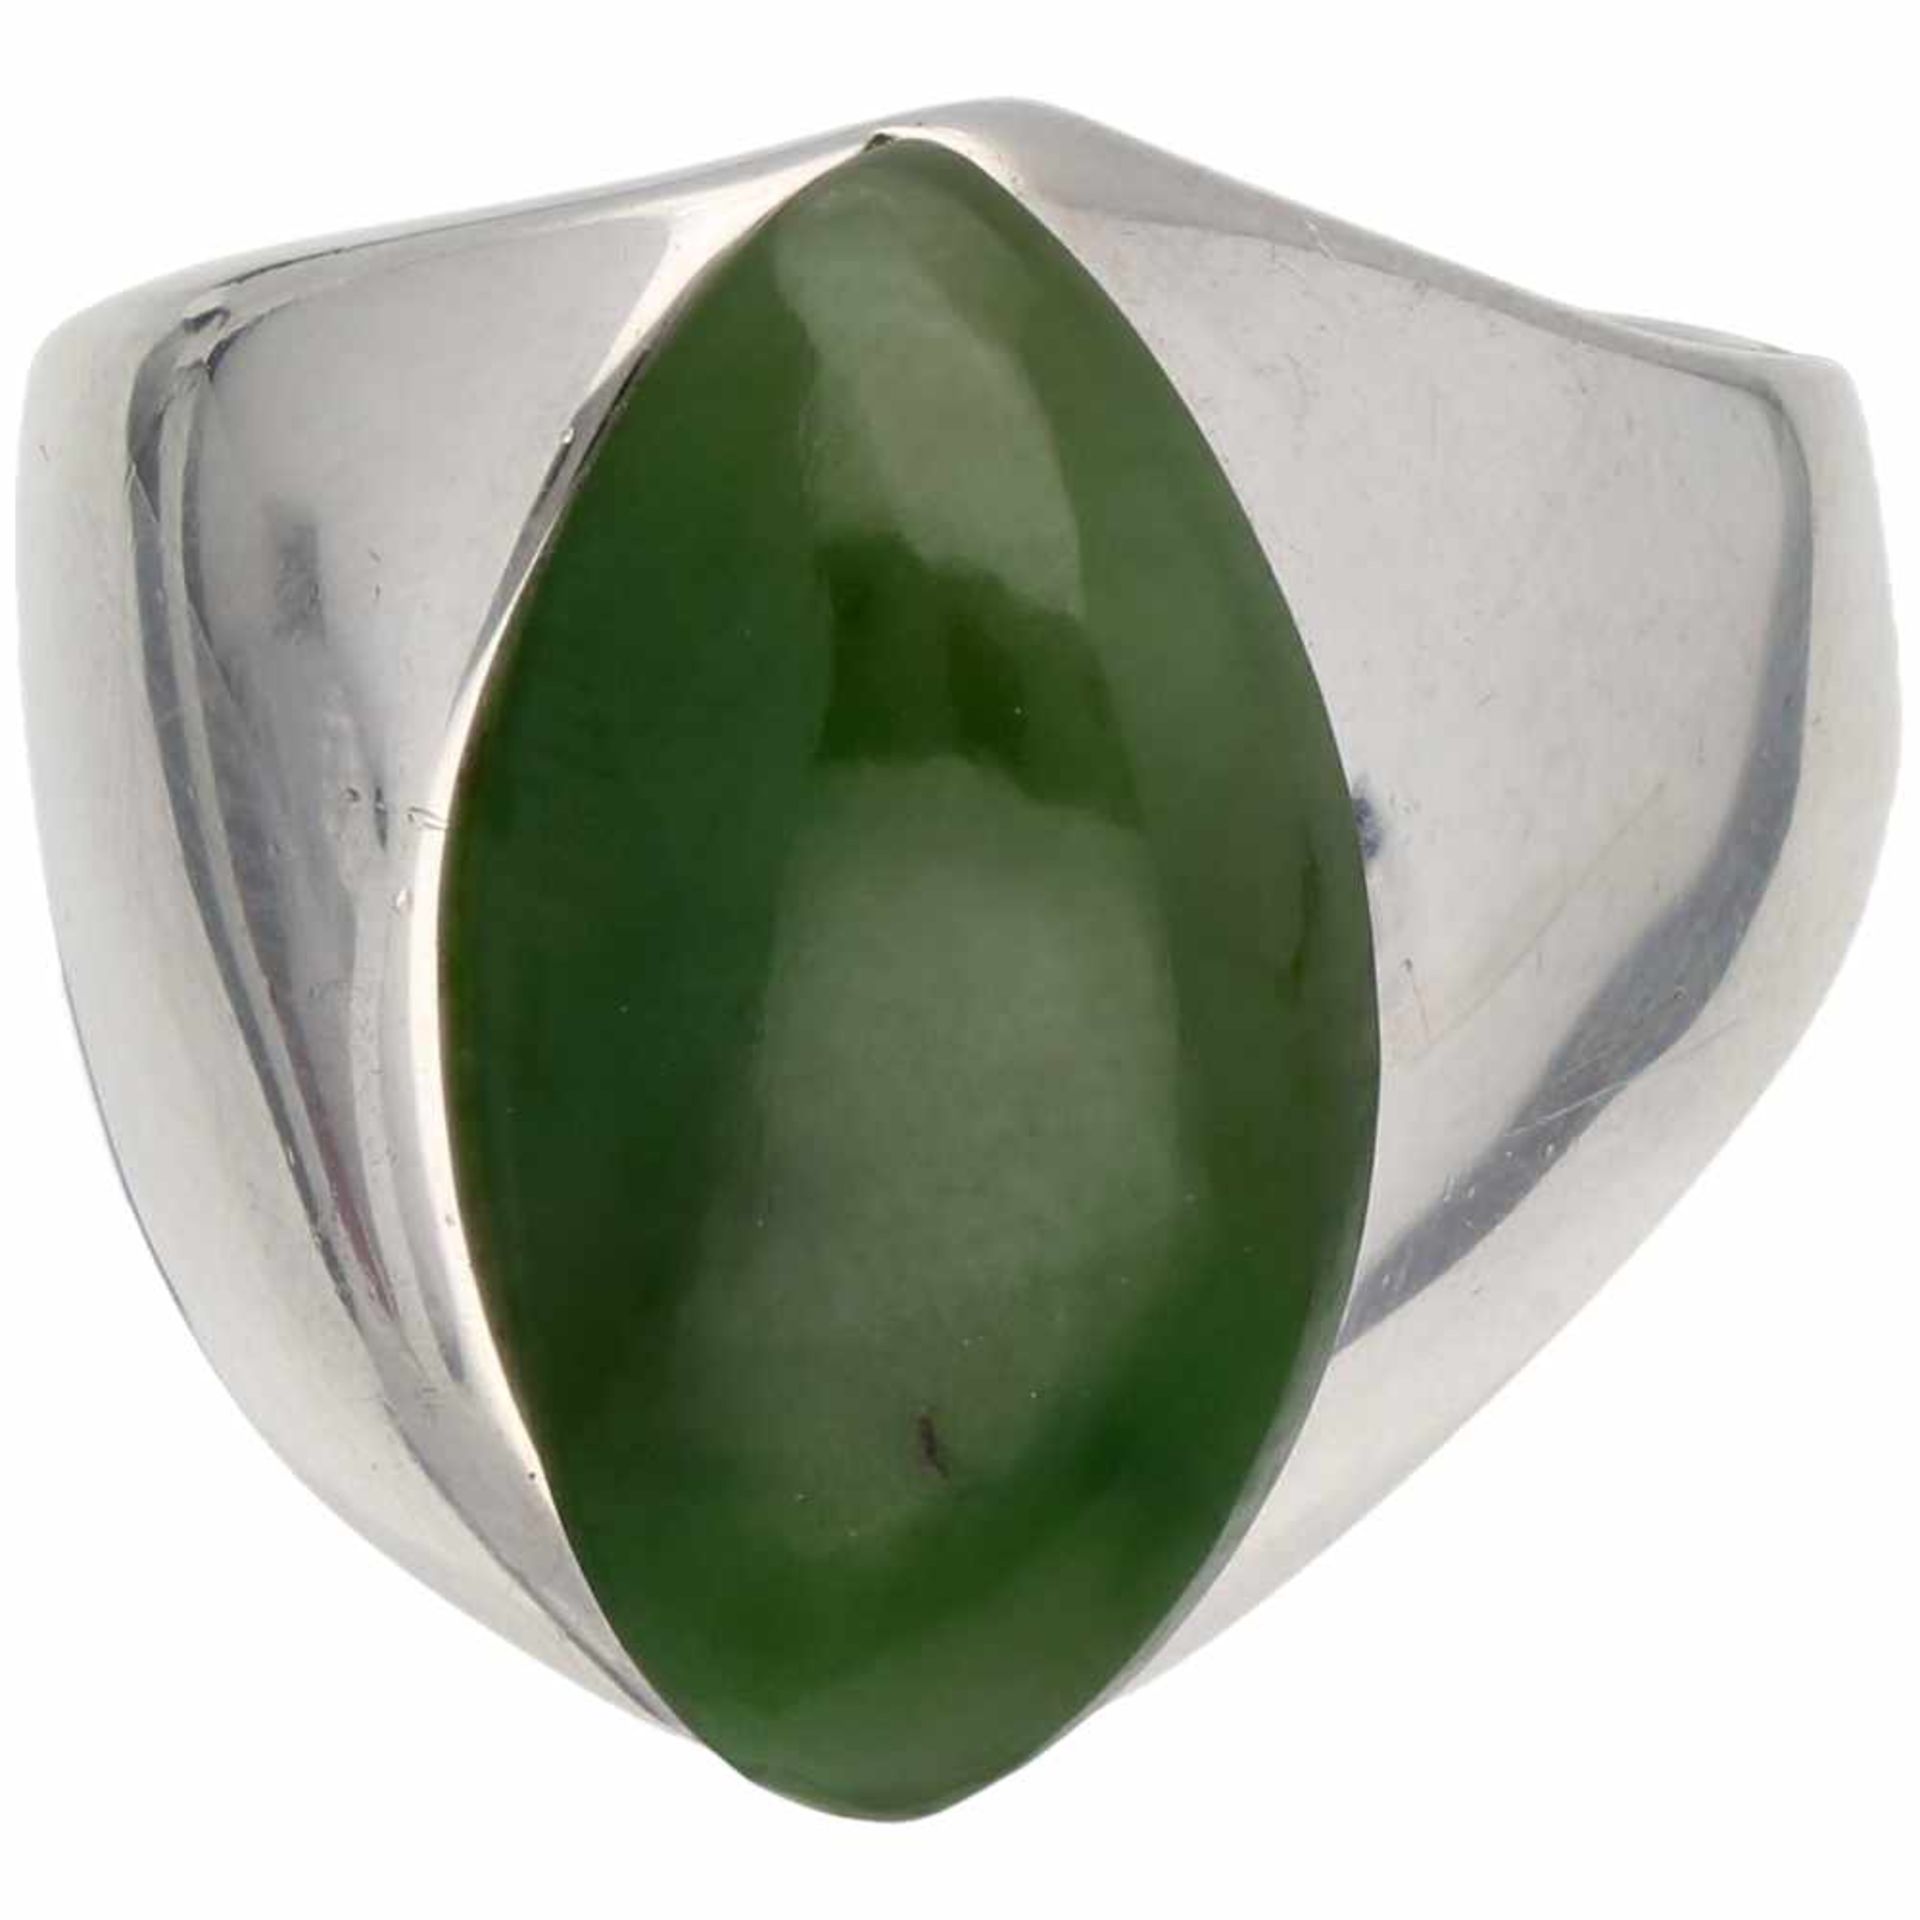 Zilveren A. Holthe A/S ring, jade - 925/1000.Noorwegen, Arendal. Jade (ca. 20 x 11 mm). Ringmaat: 18 - Bild 2 aus 3